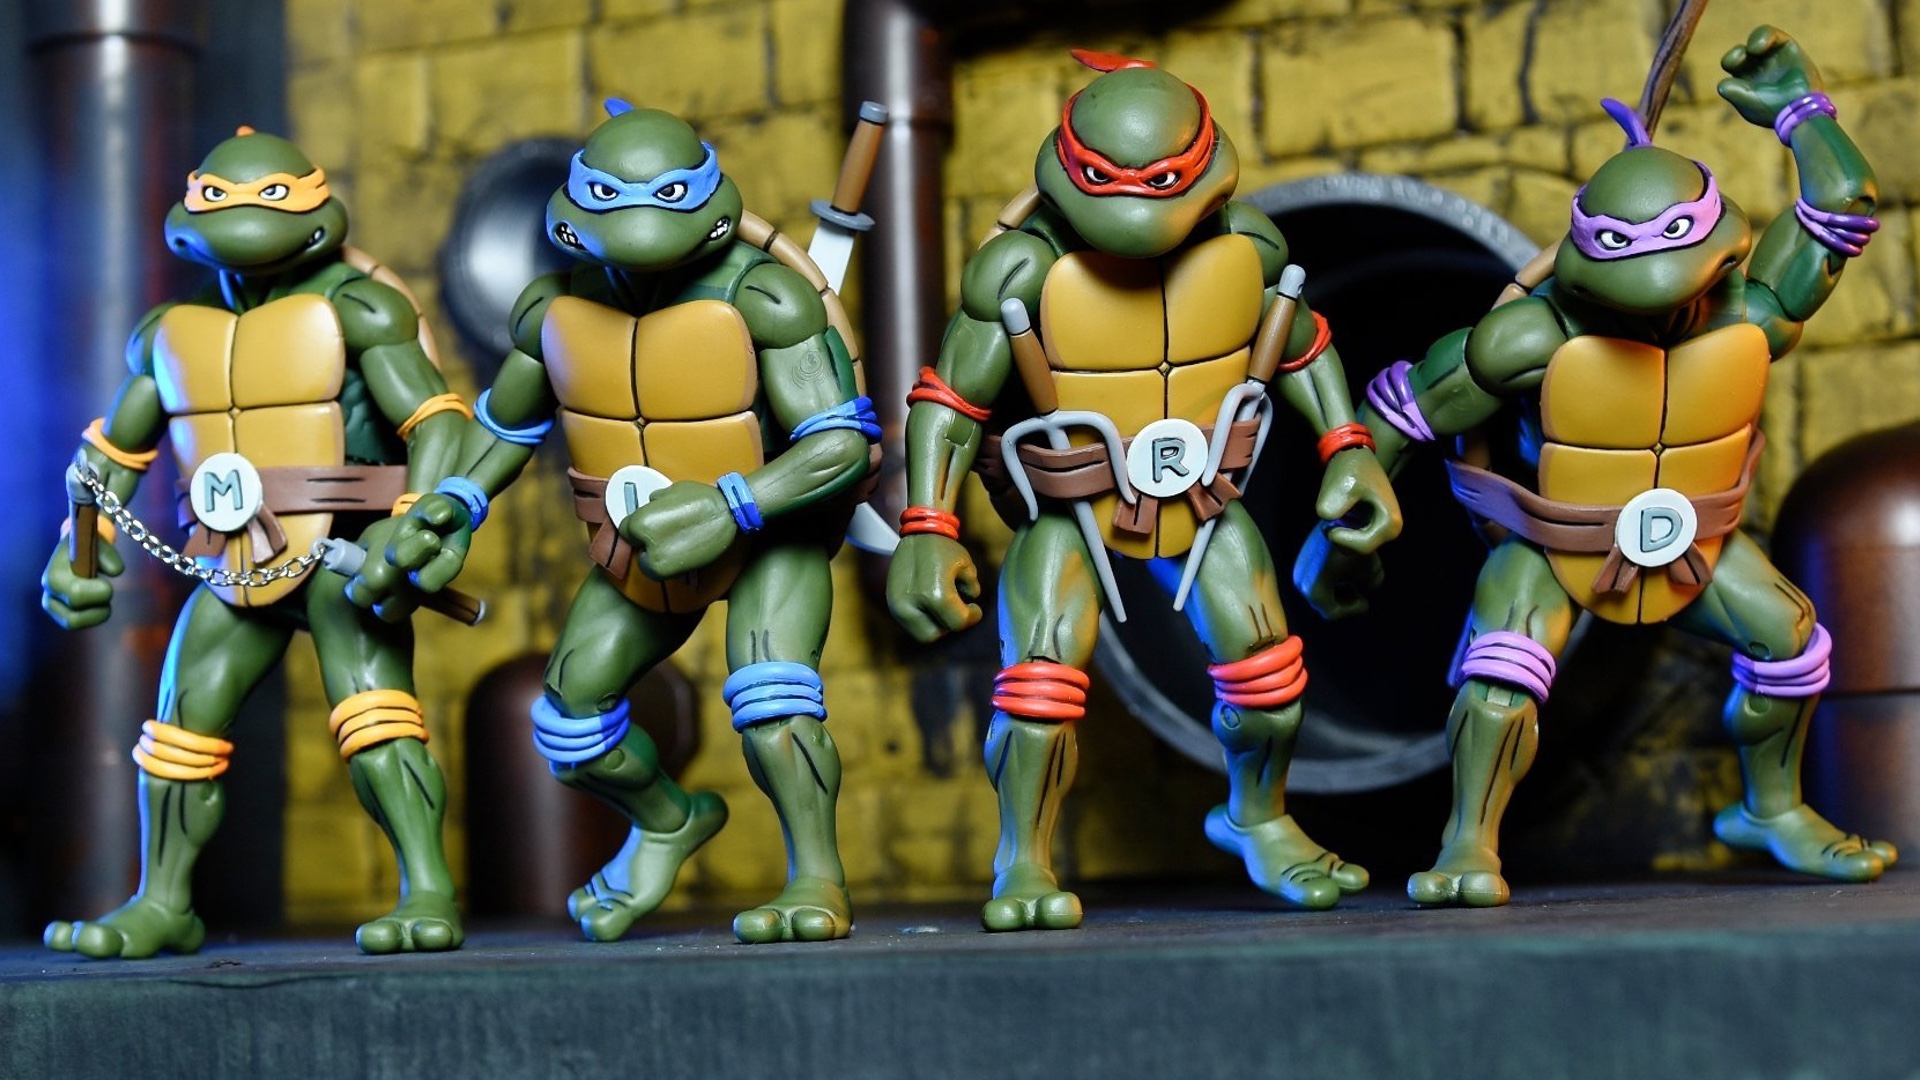 original ninja turtle toys